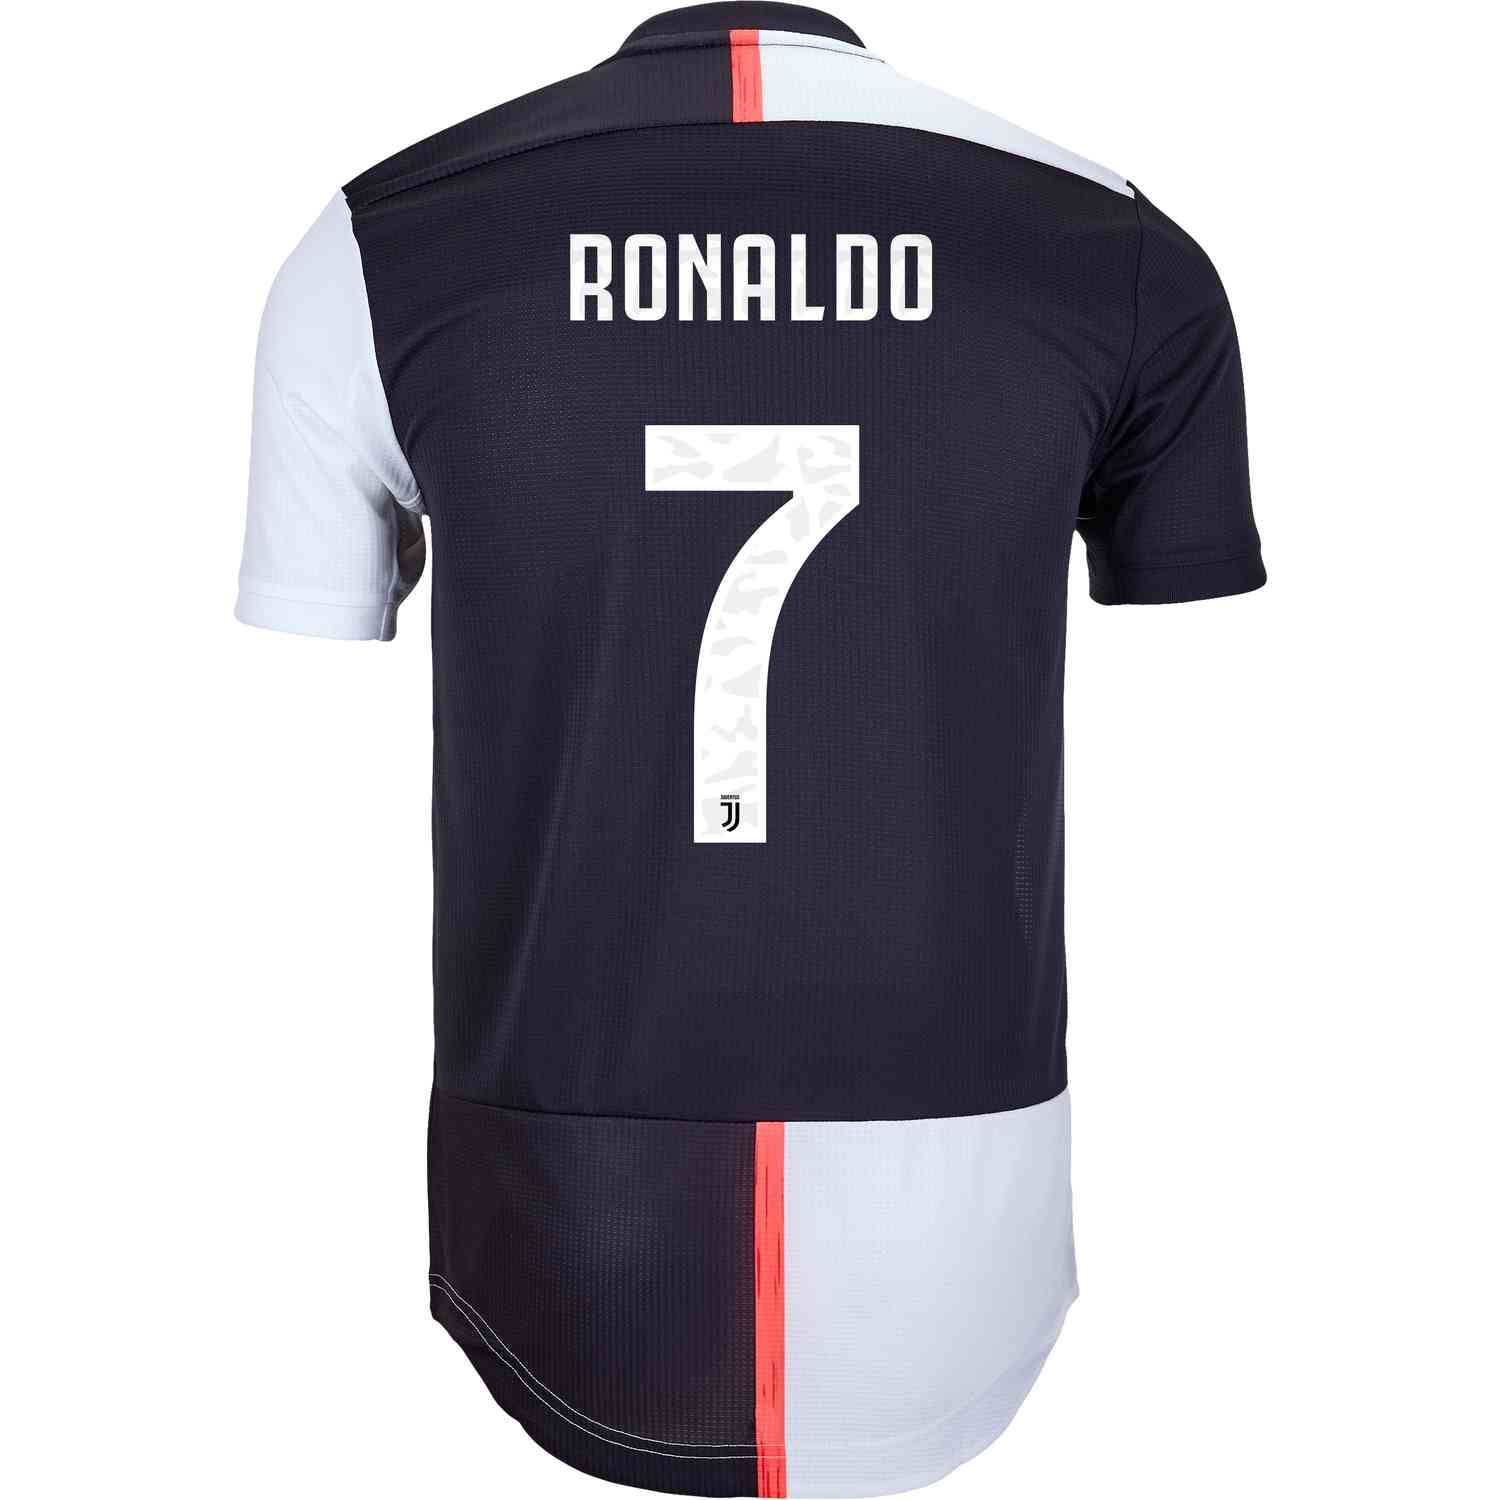 ronaldo authentic jersey